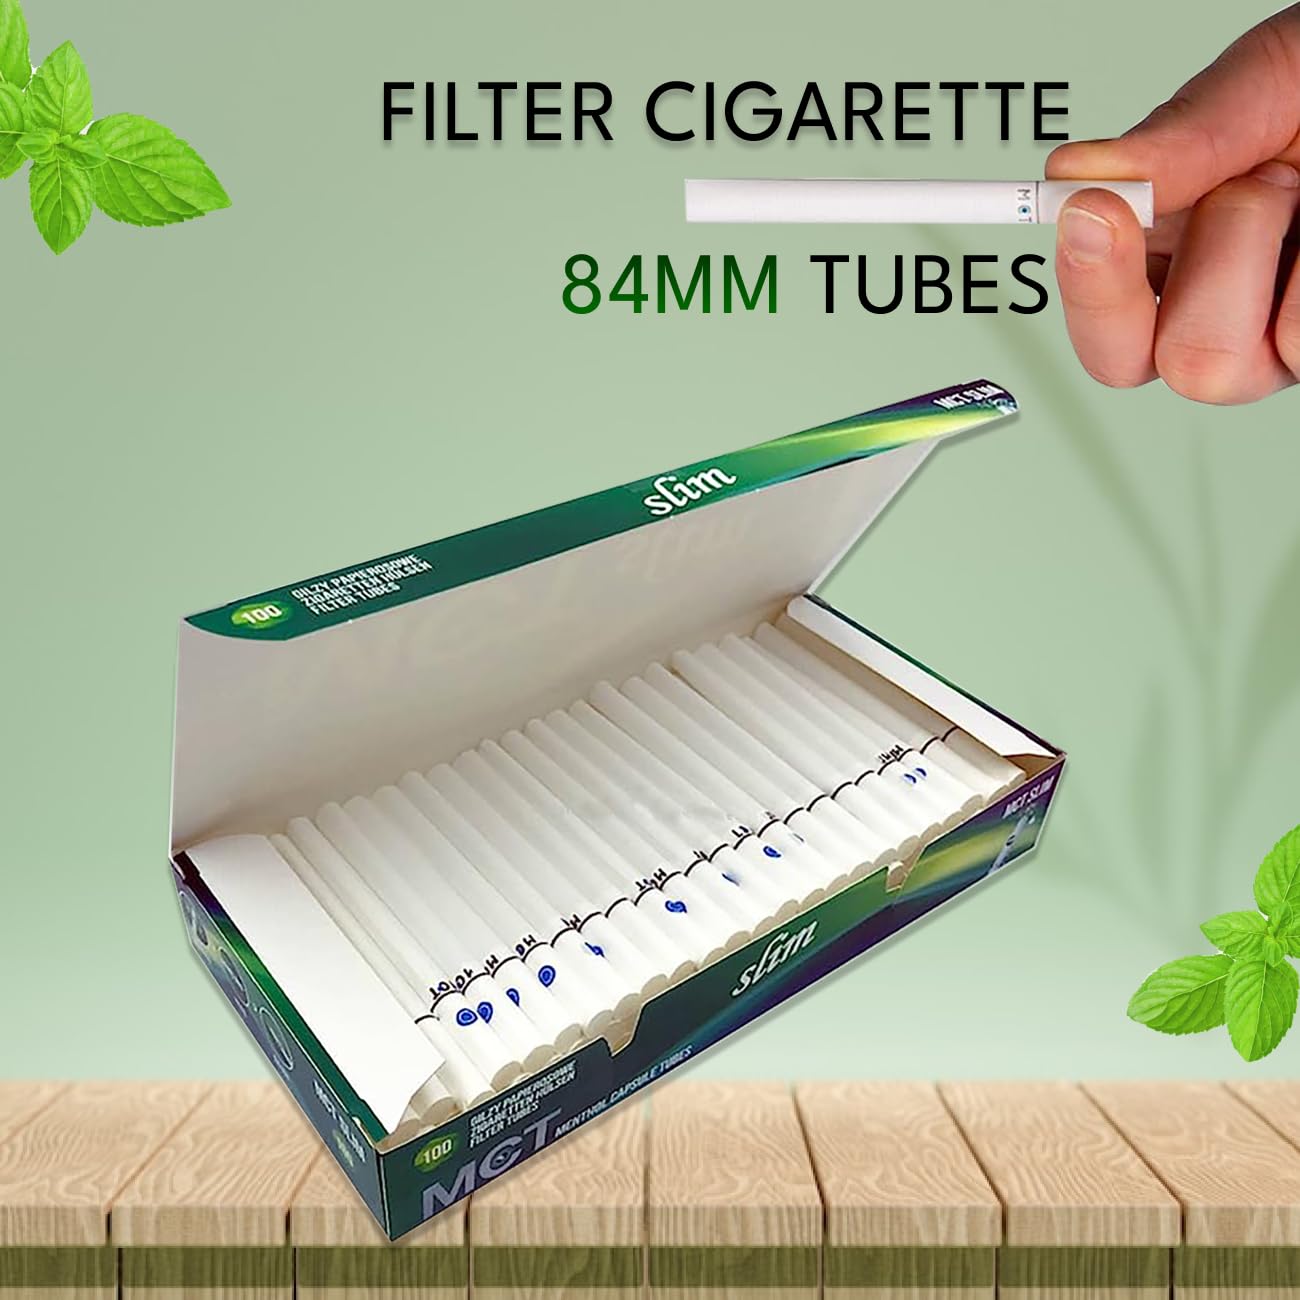 MCT Menthol Capsule Tube Click Filtertubes Long Size Full 20 mm Filter Cigarette Tubes - 100 Tubes Per Box